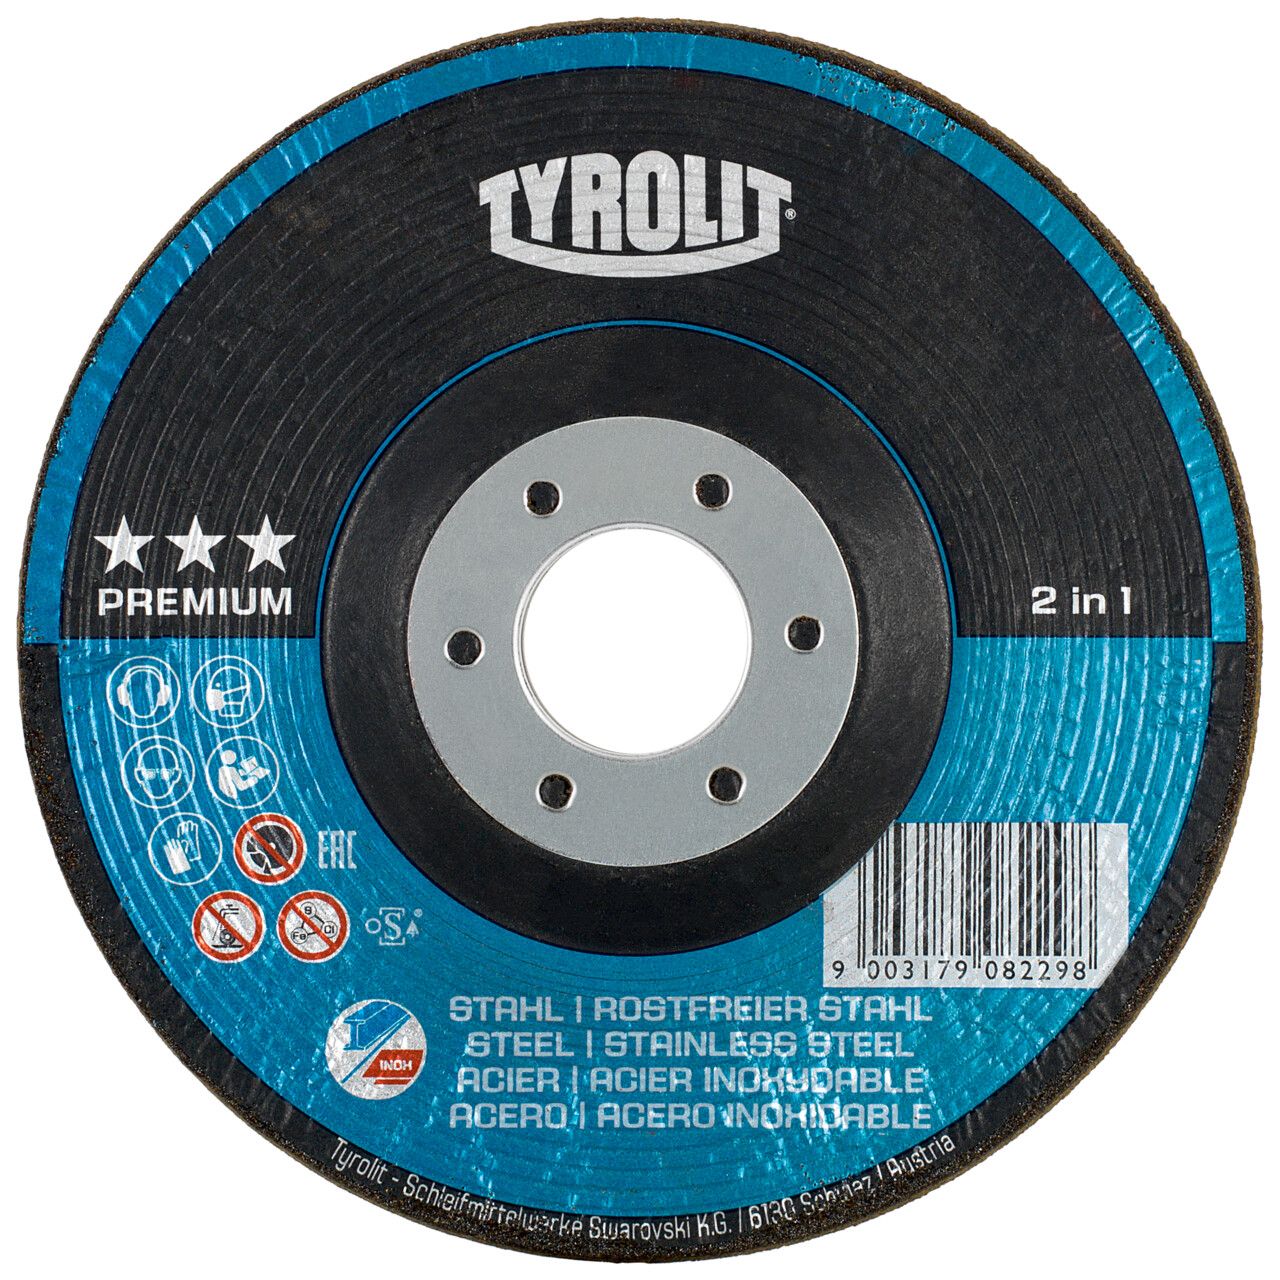 Tyrolit 2in1 RONDELLER® para acero y acero inoxidable 125 #29RON 125x22,23 A60Q-BF